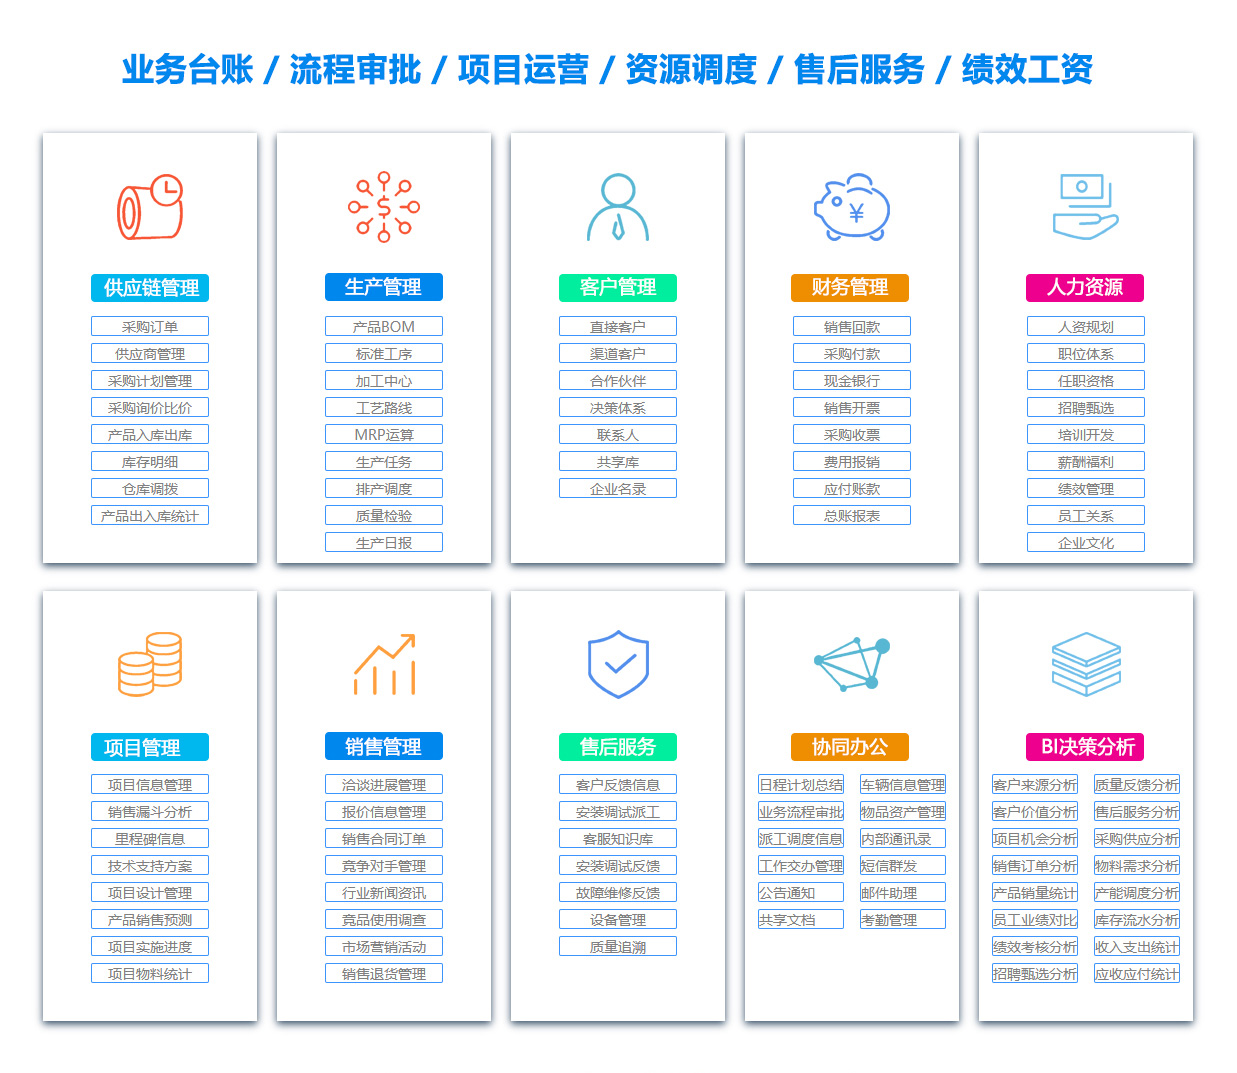 宜昌SCM:供应链管理系统